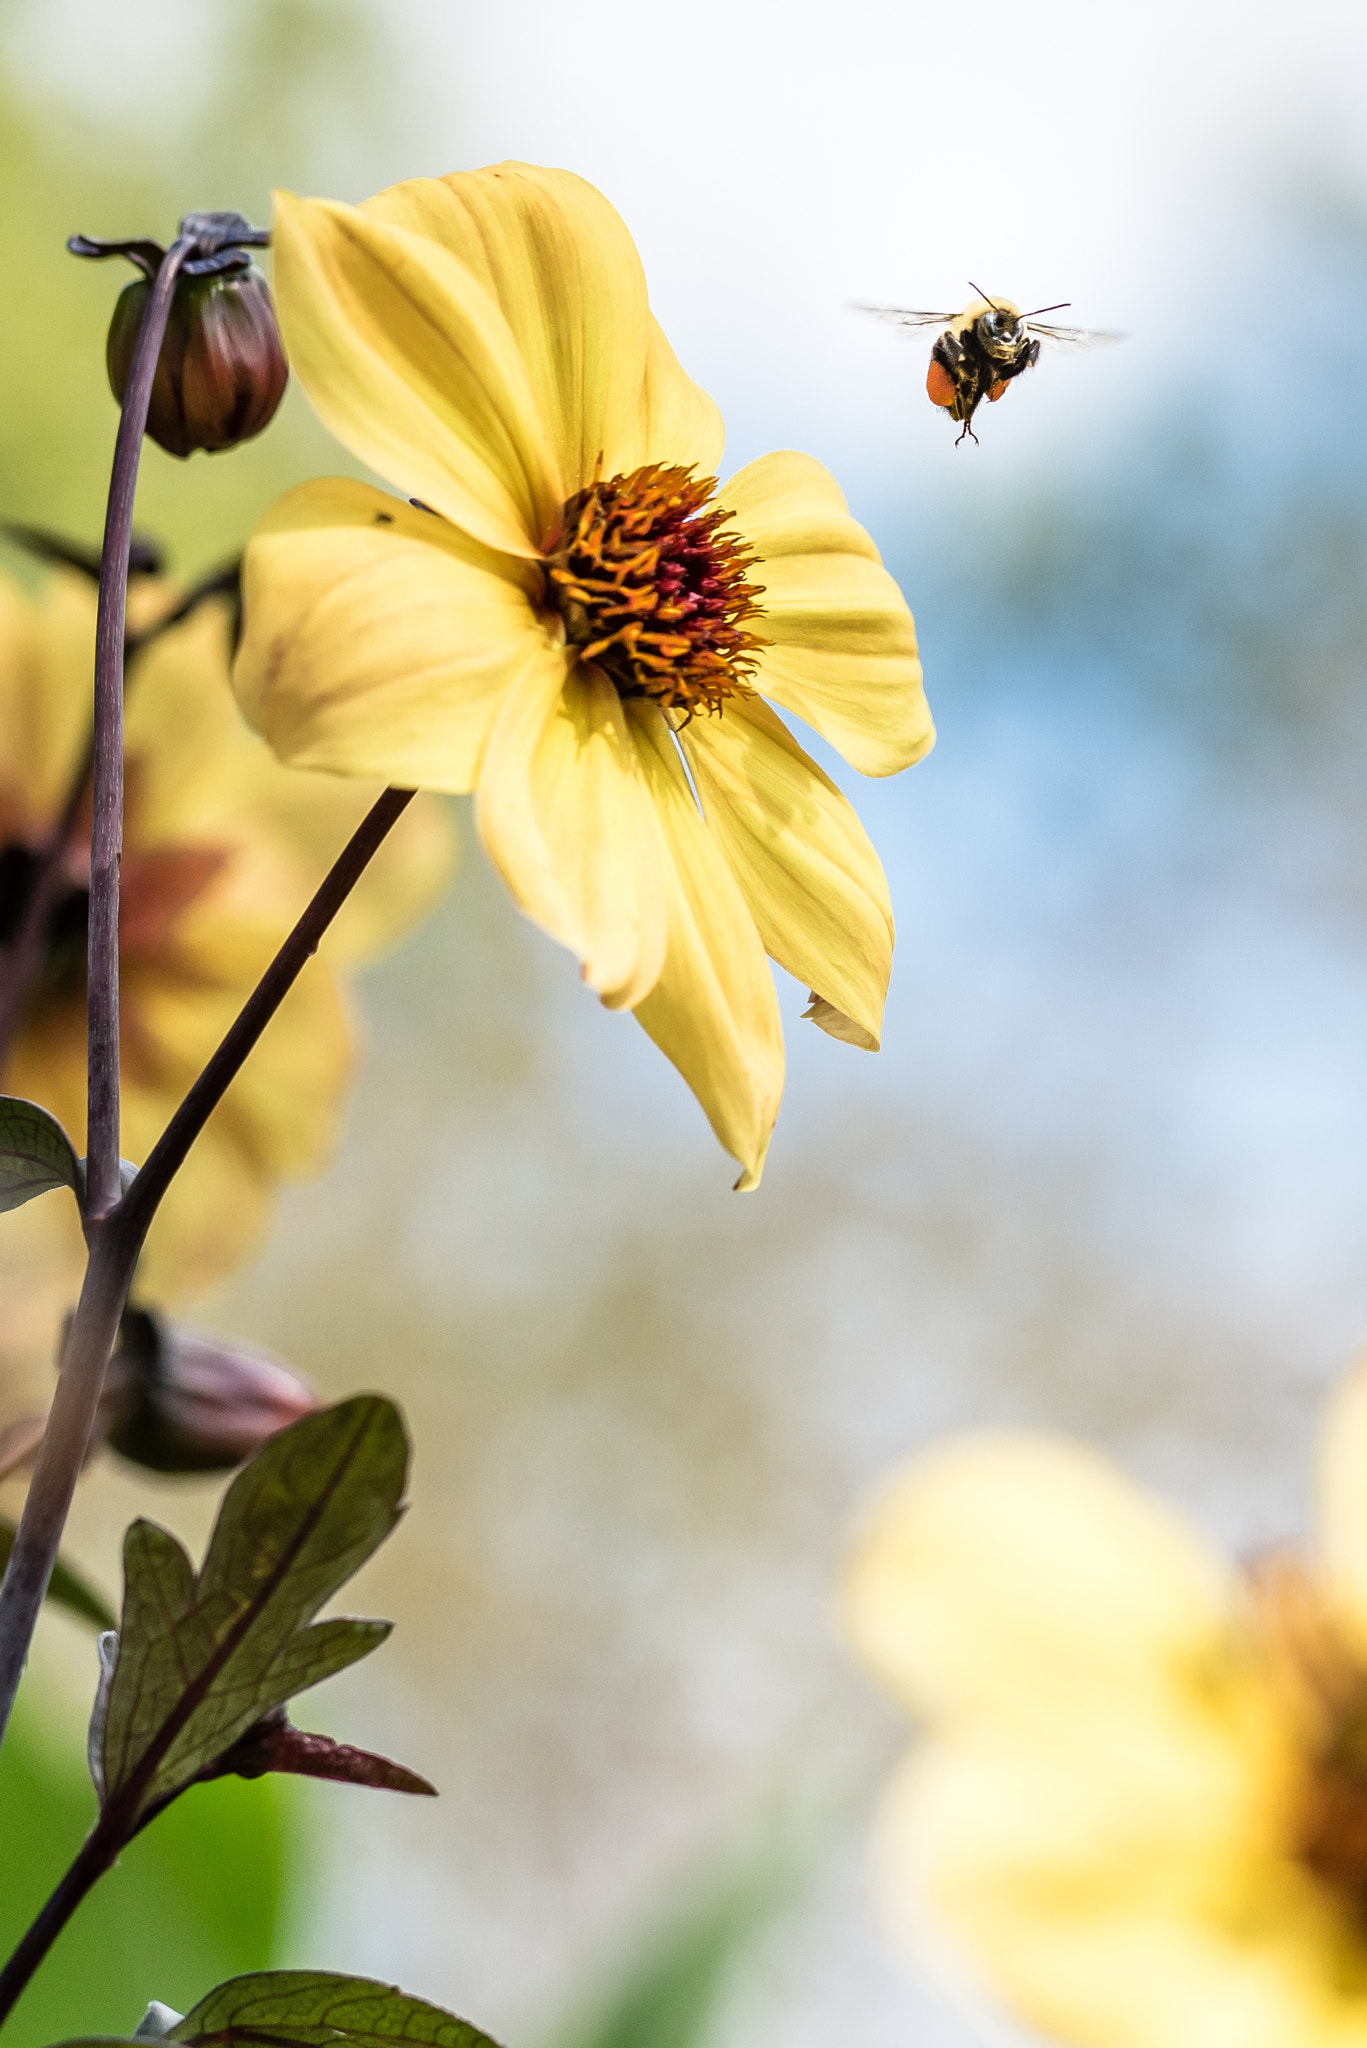 Zeiss Milvus 85mm f/1.4 sample photo. Carpenter bee in flighf photography